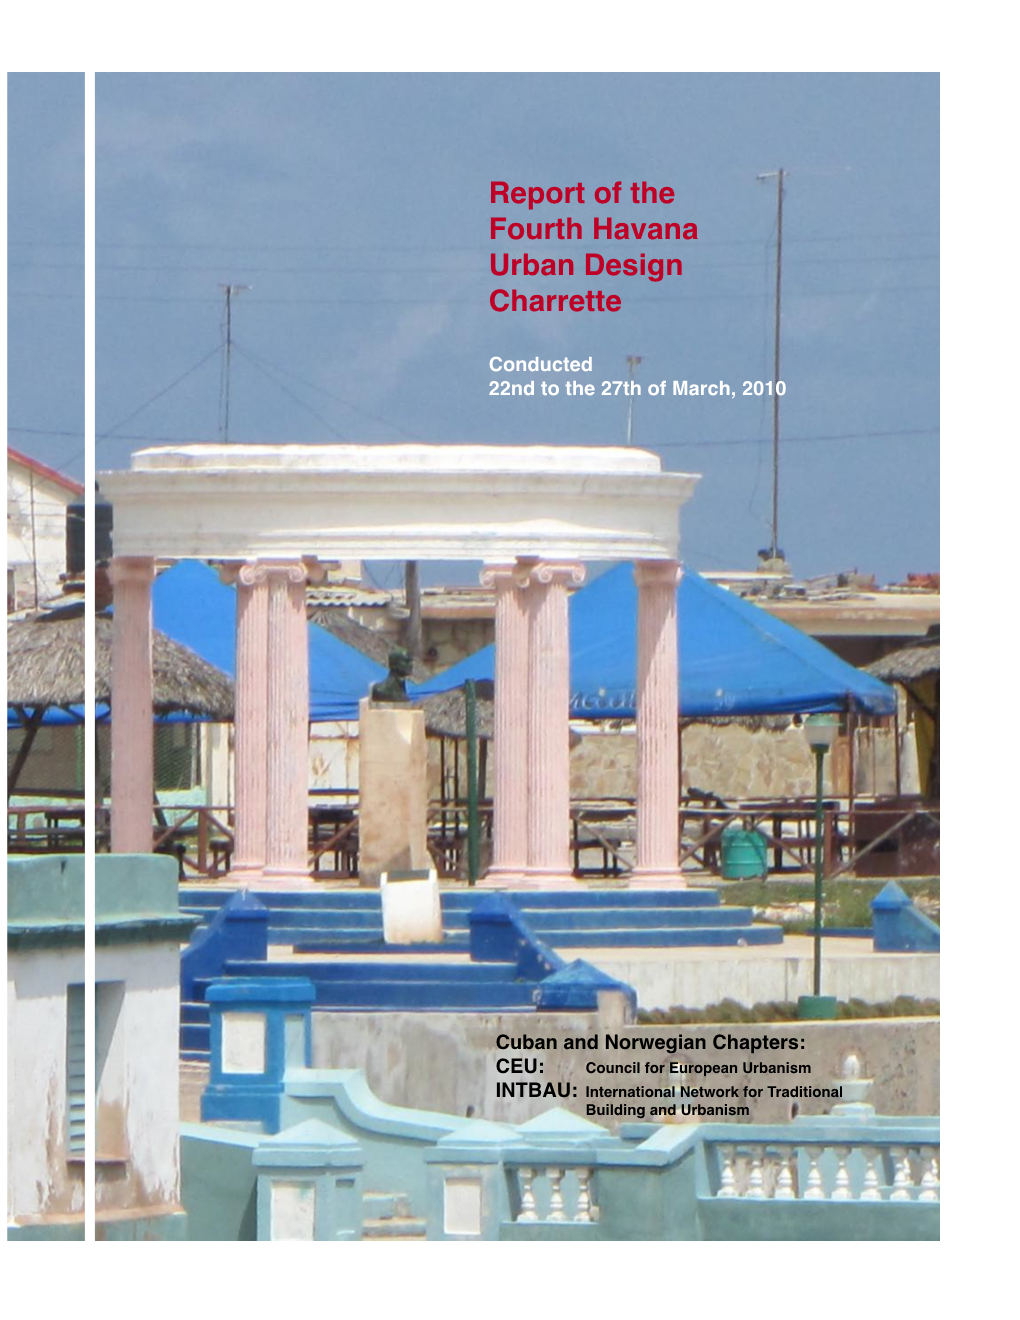 Report of the Fourth Havana Urban Design Charrette